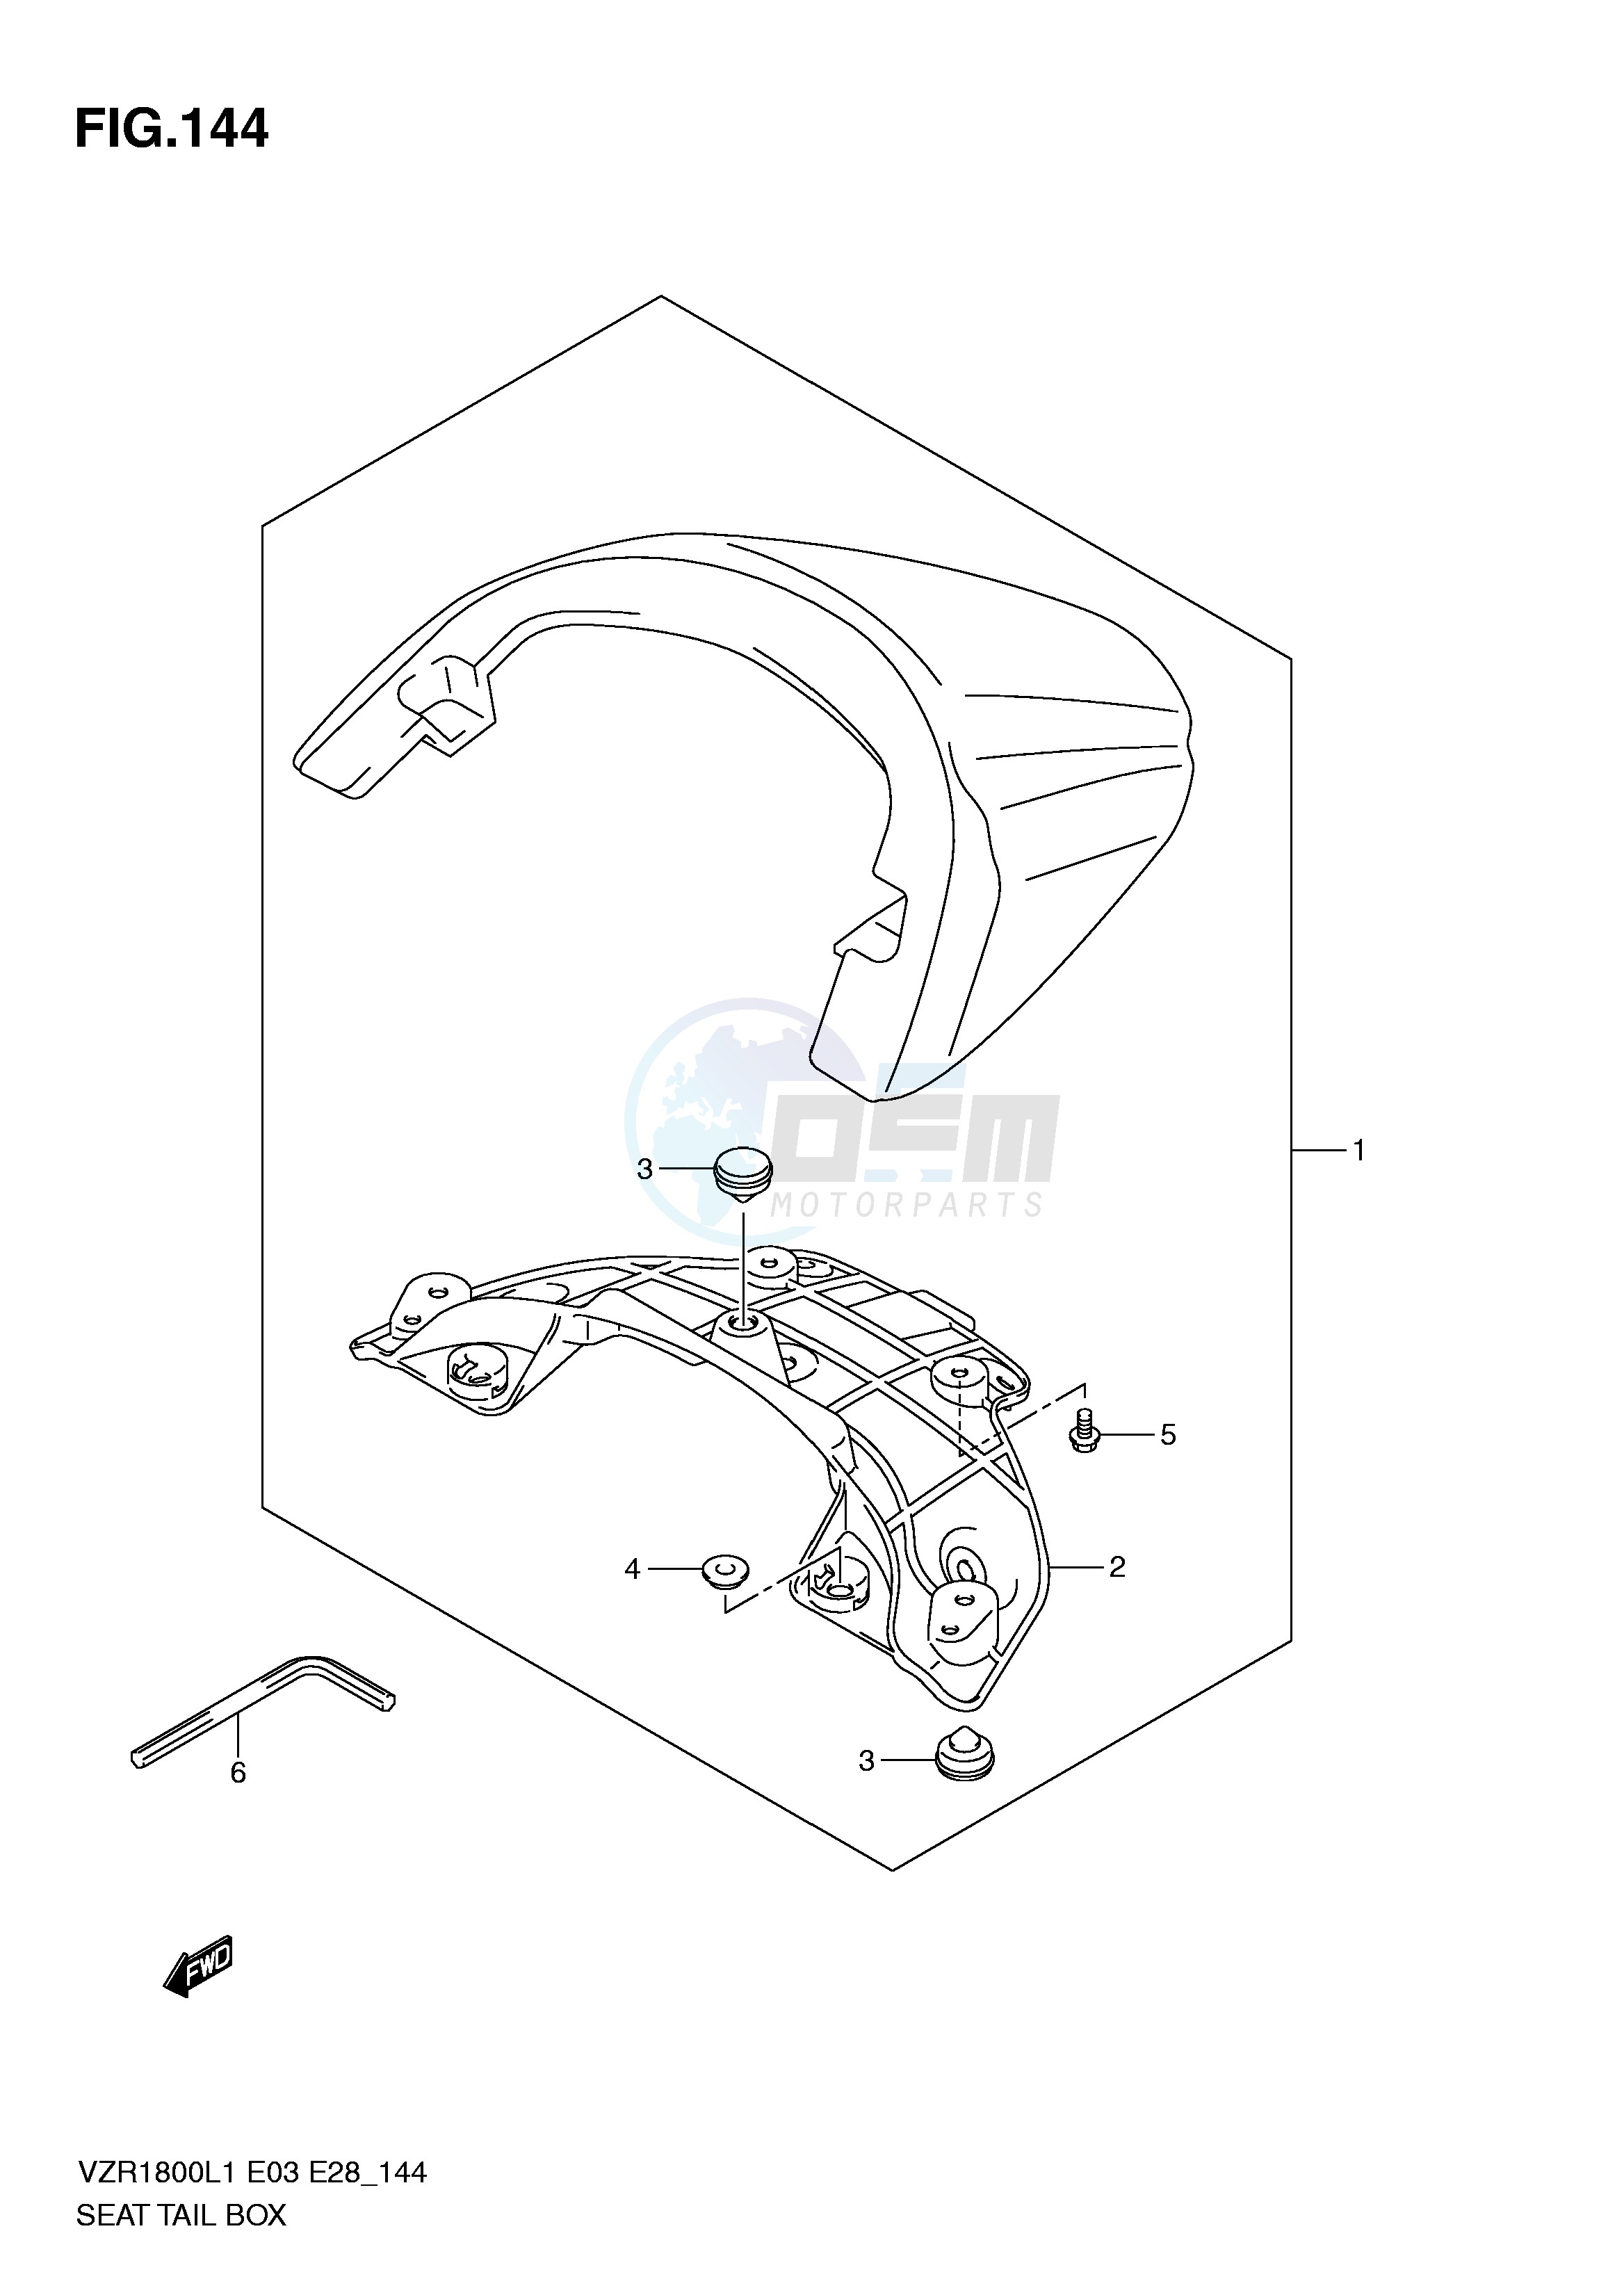 SEAT TAIL BOX (VZR1800ZL1 E33) blueprint